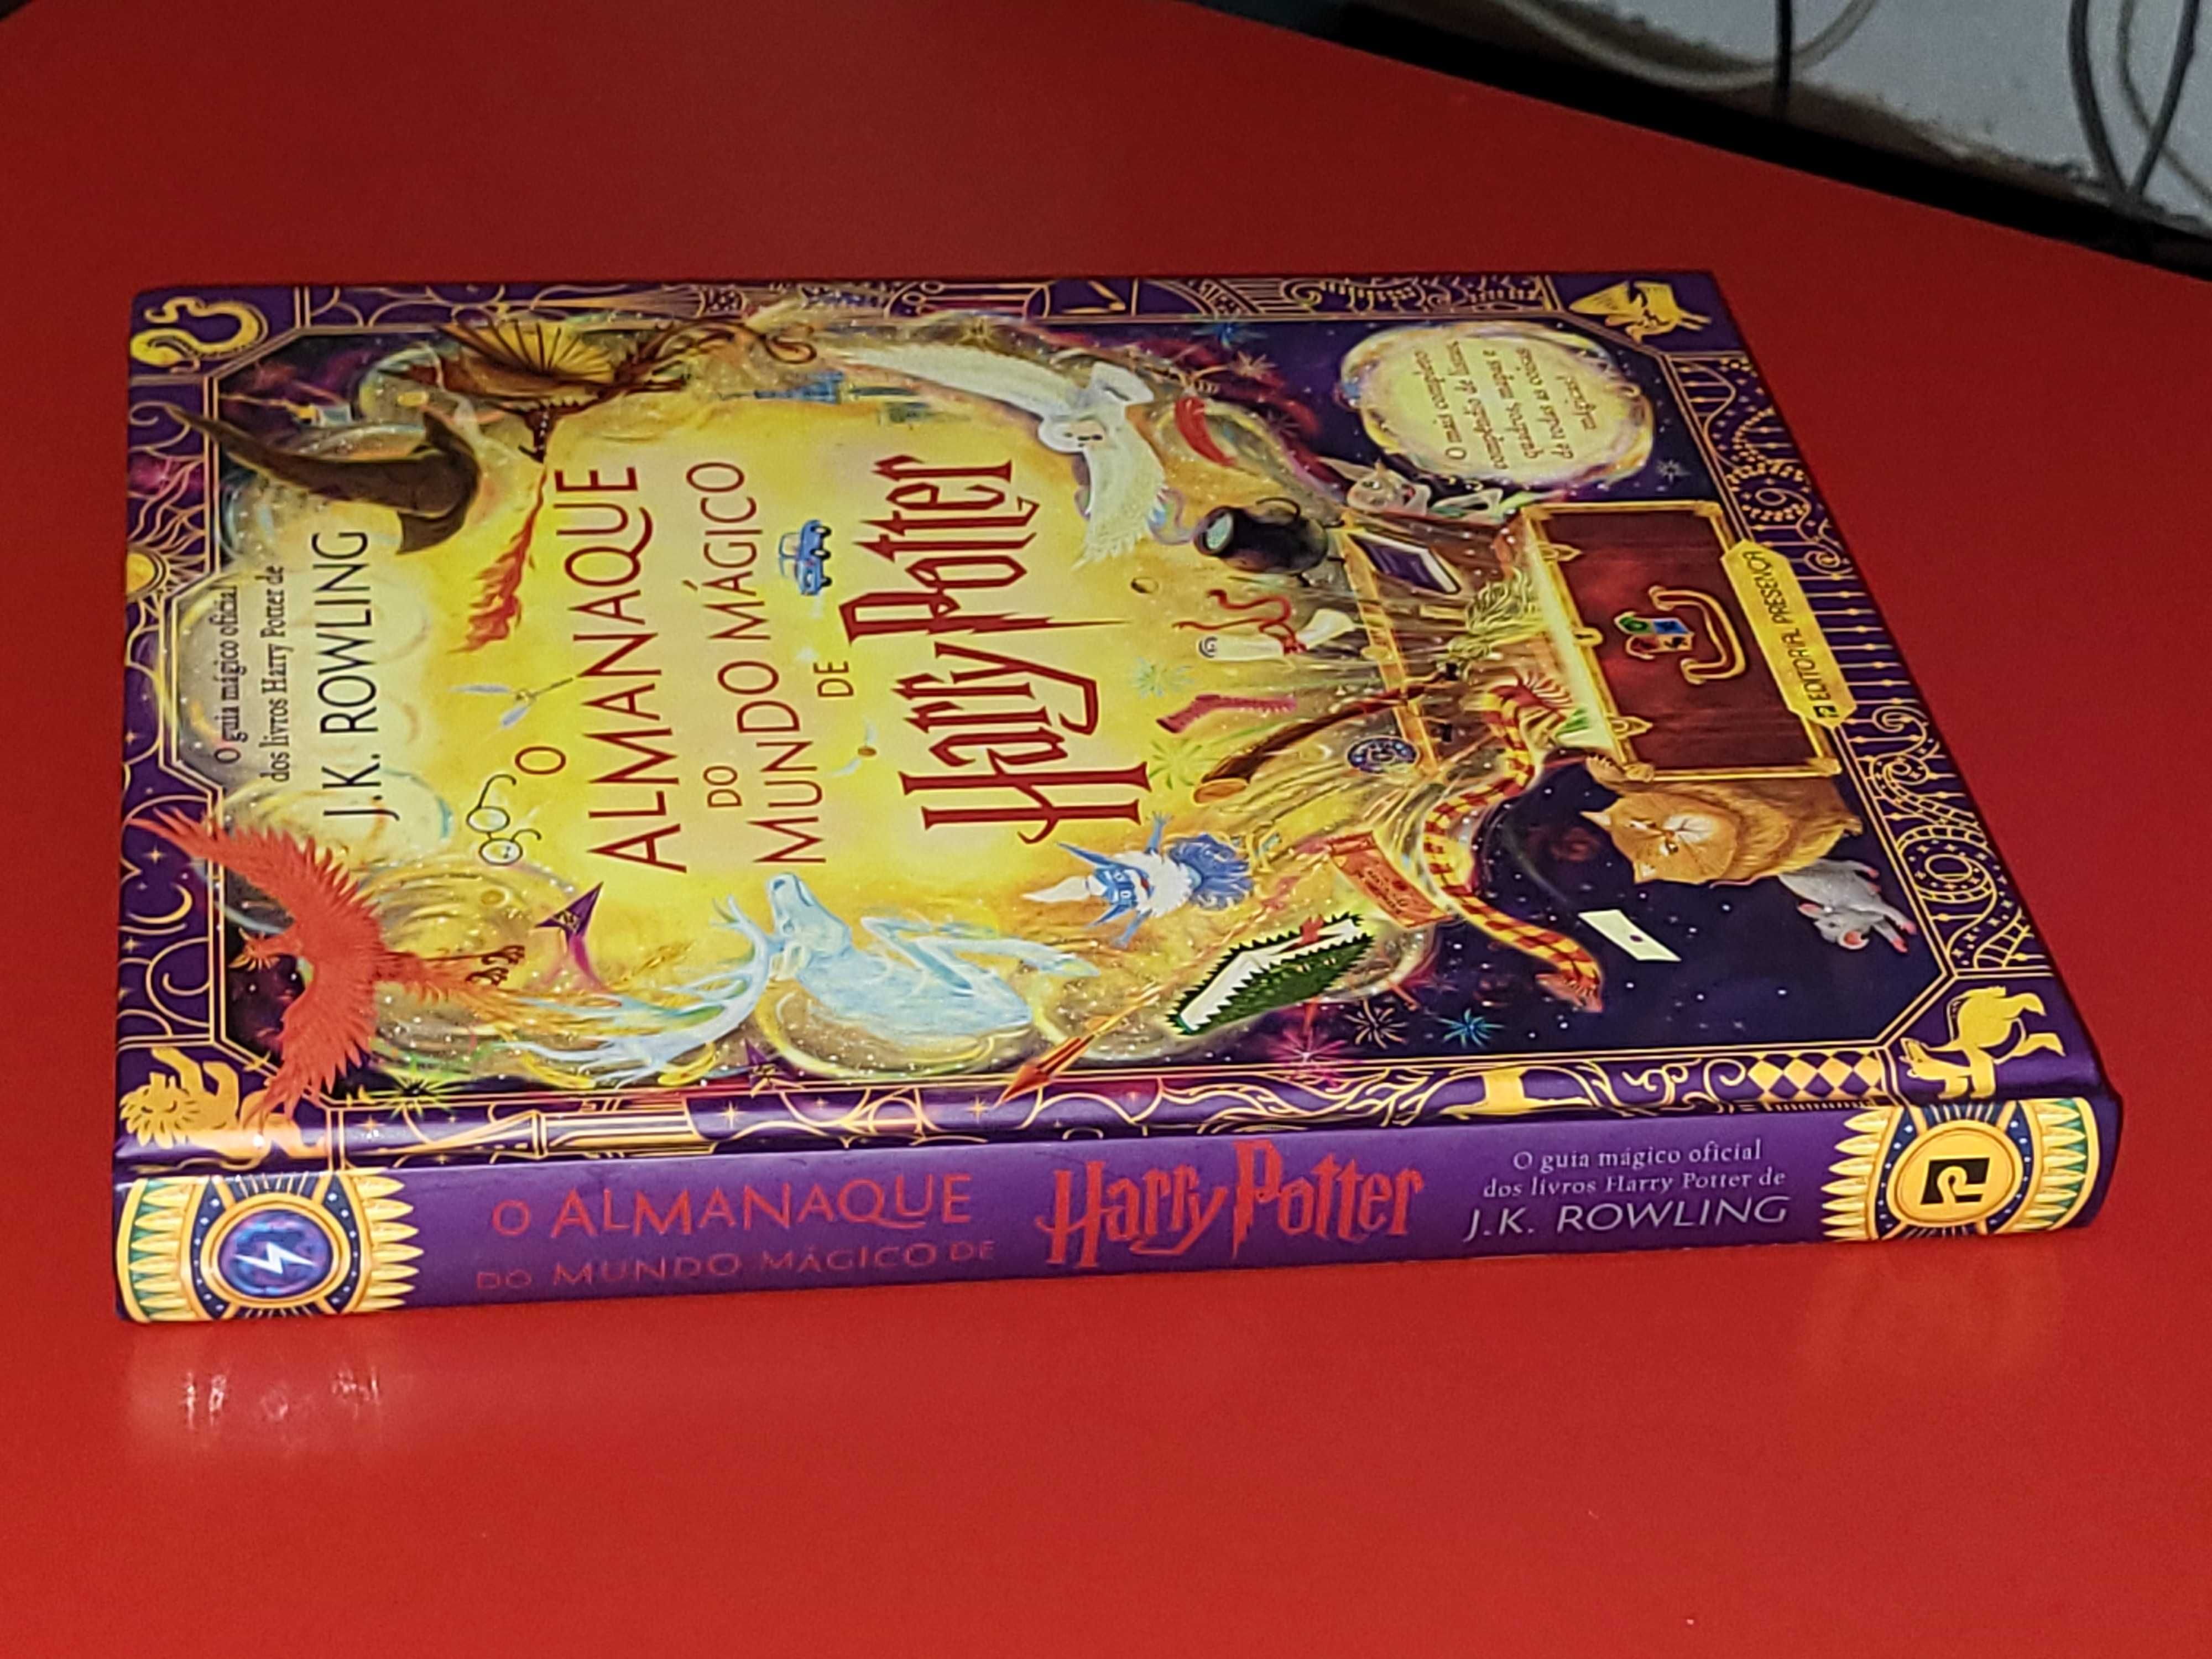 O Almanaque do Mundo Mágico de Harry Potter de J. K. Rowling